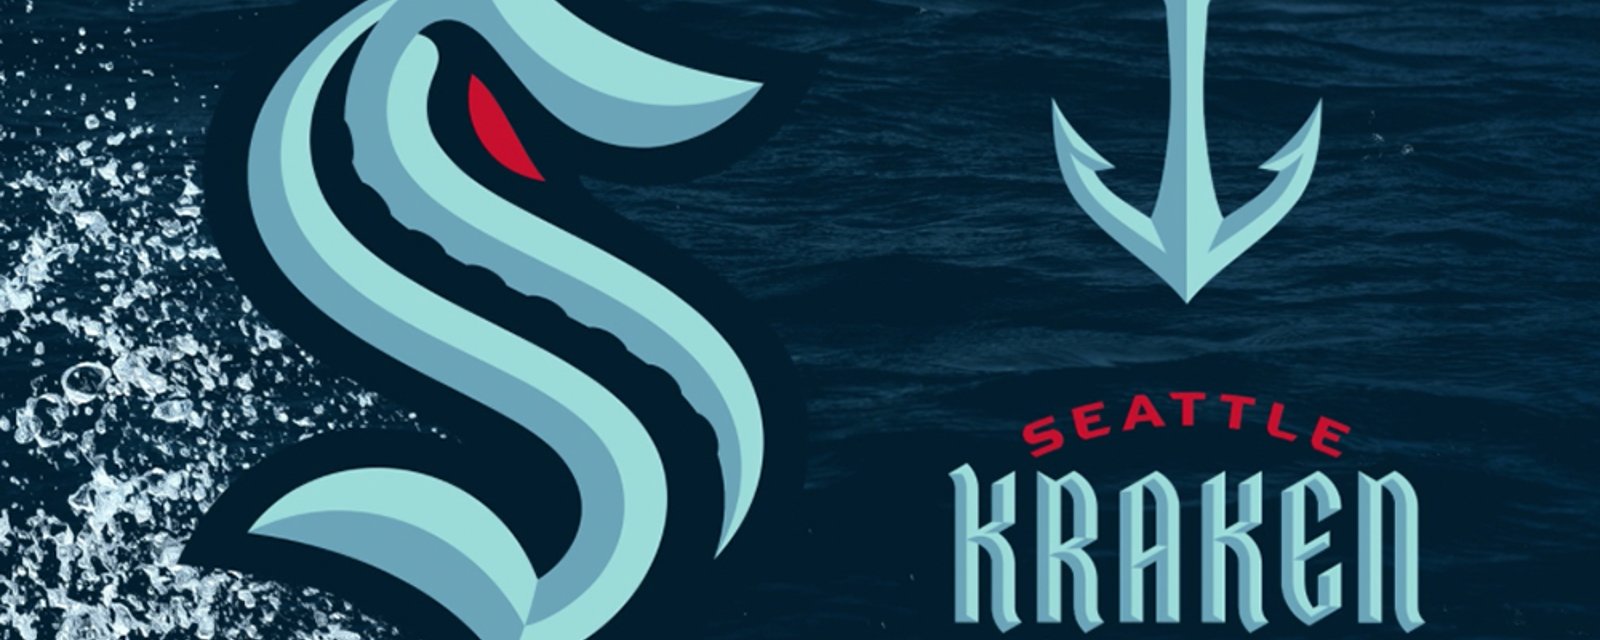 Seattle Kraken logos and jersey revealed!